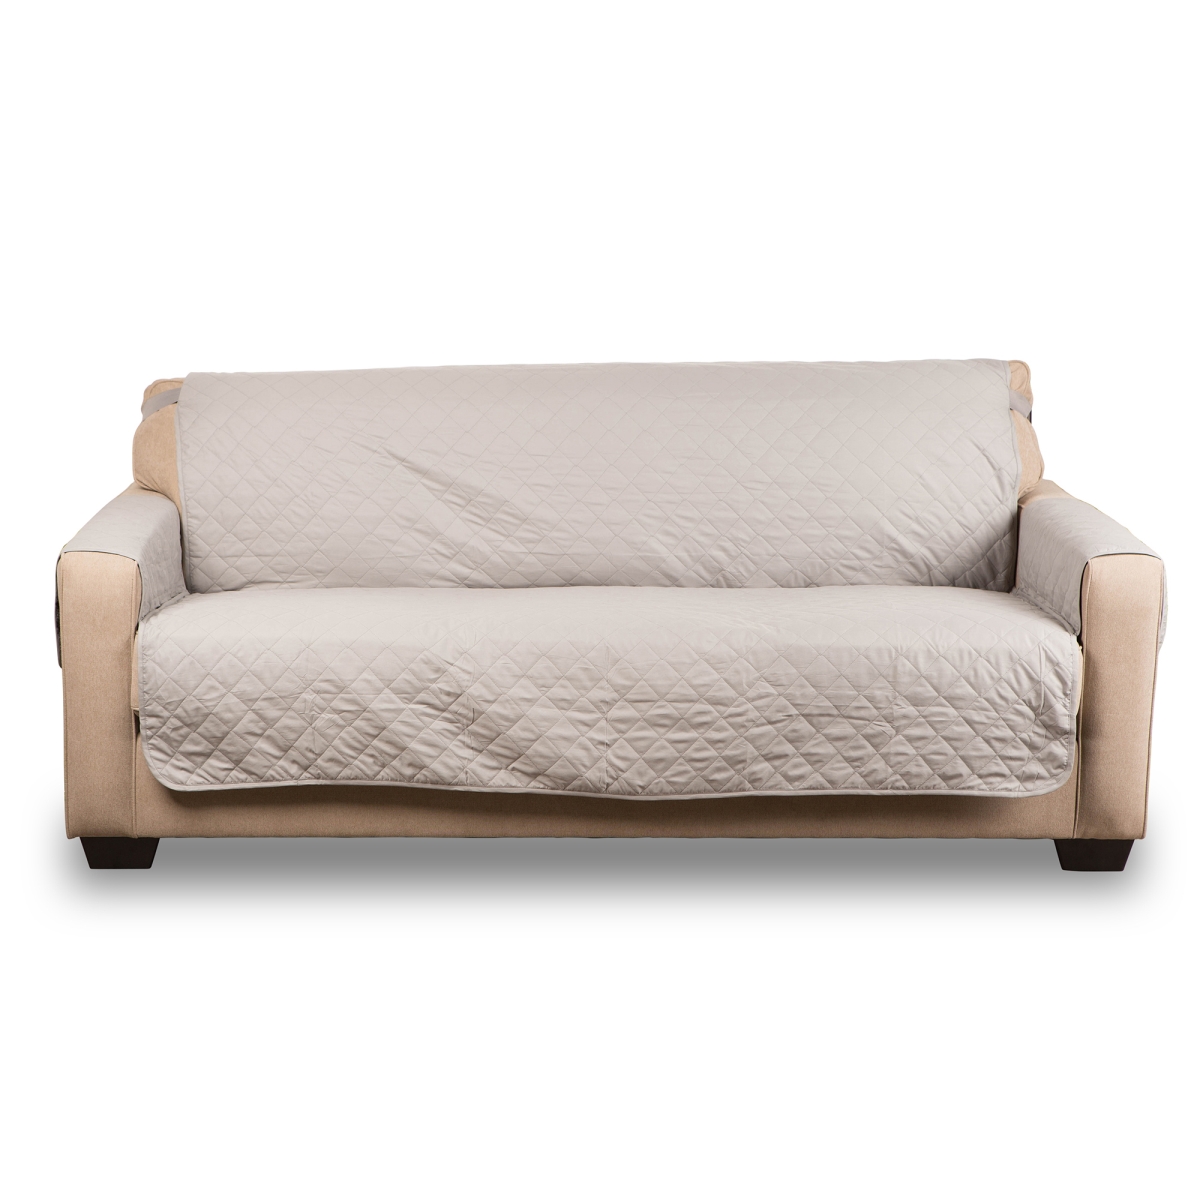 Design Imports Z02141 Dii Reversible Oversize Sofa Cover Multi Print, Grey